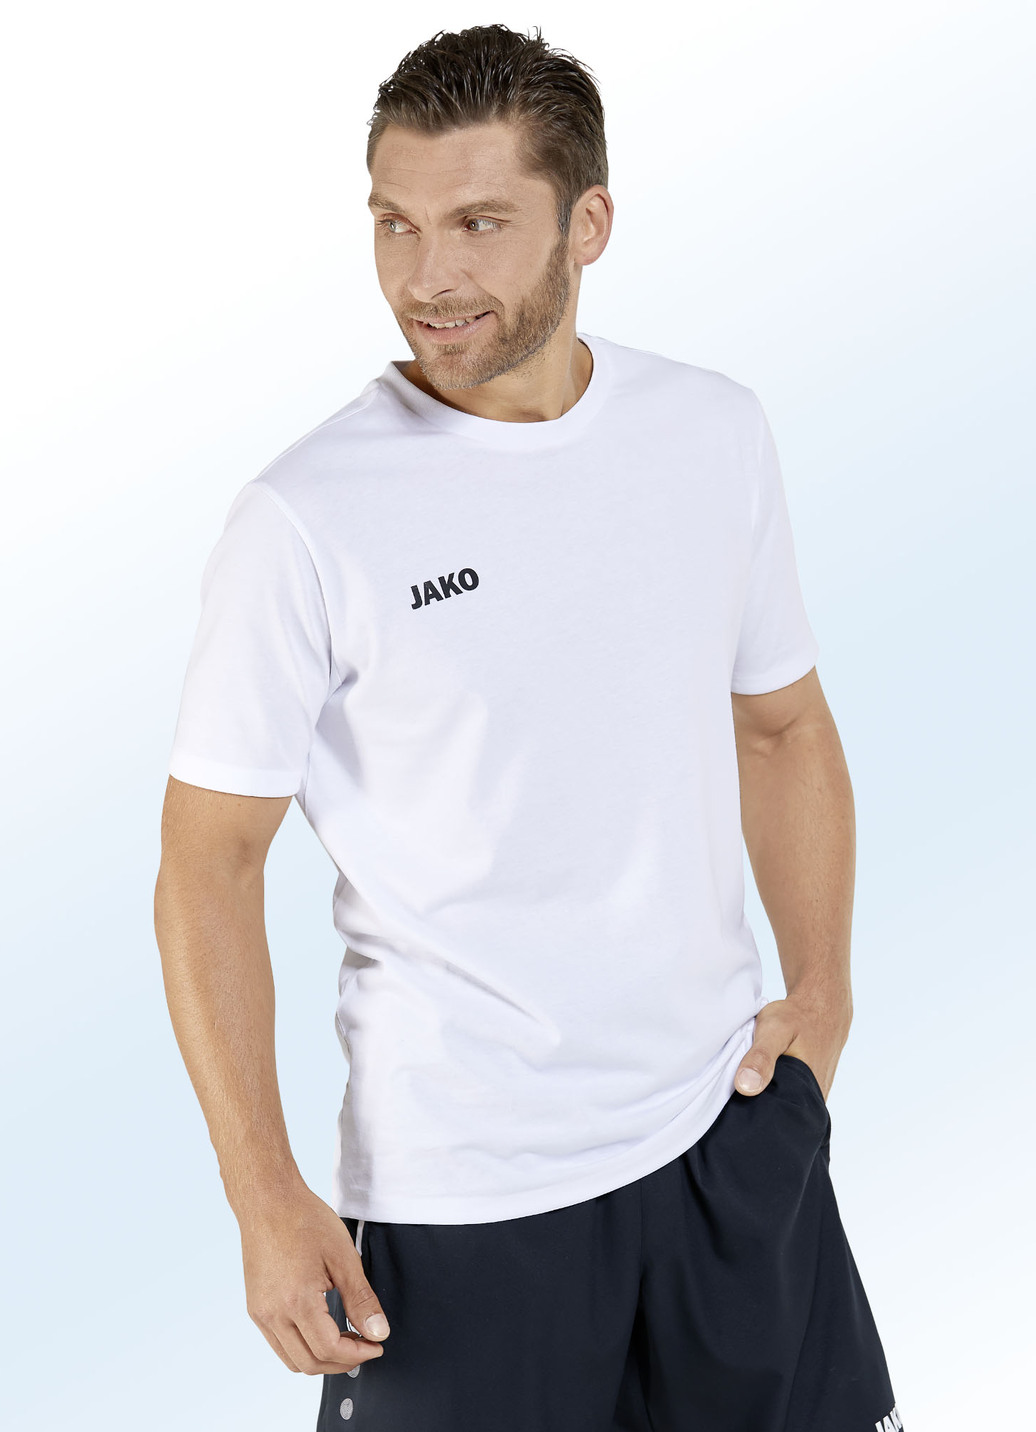 Doppelpack Shirt von "Jako" in 6 Farben, Größe 4XL (62), Weiss-Schwarz von Jako